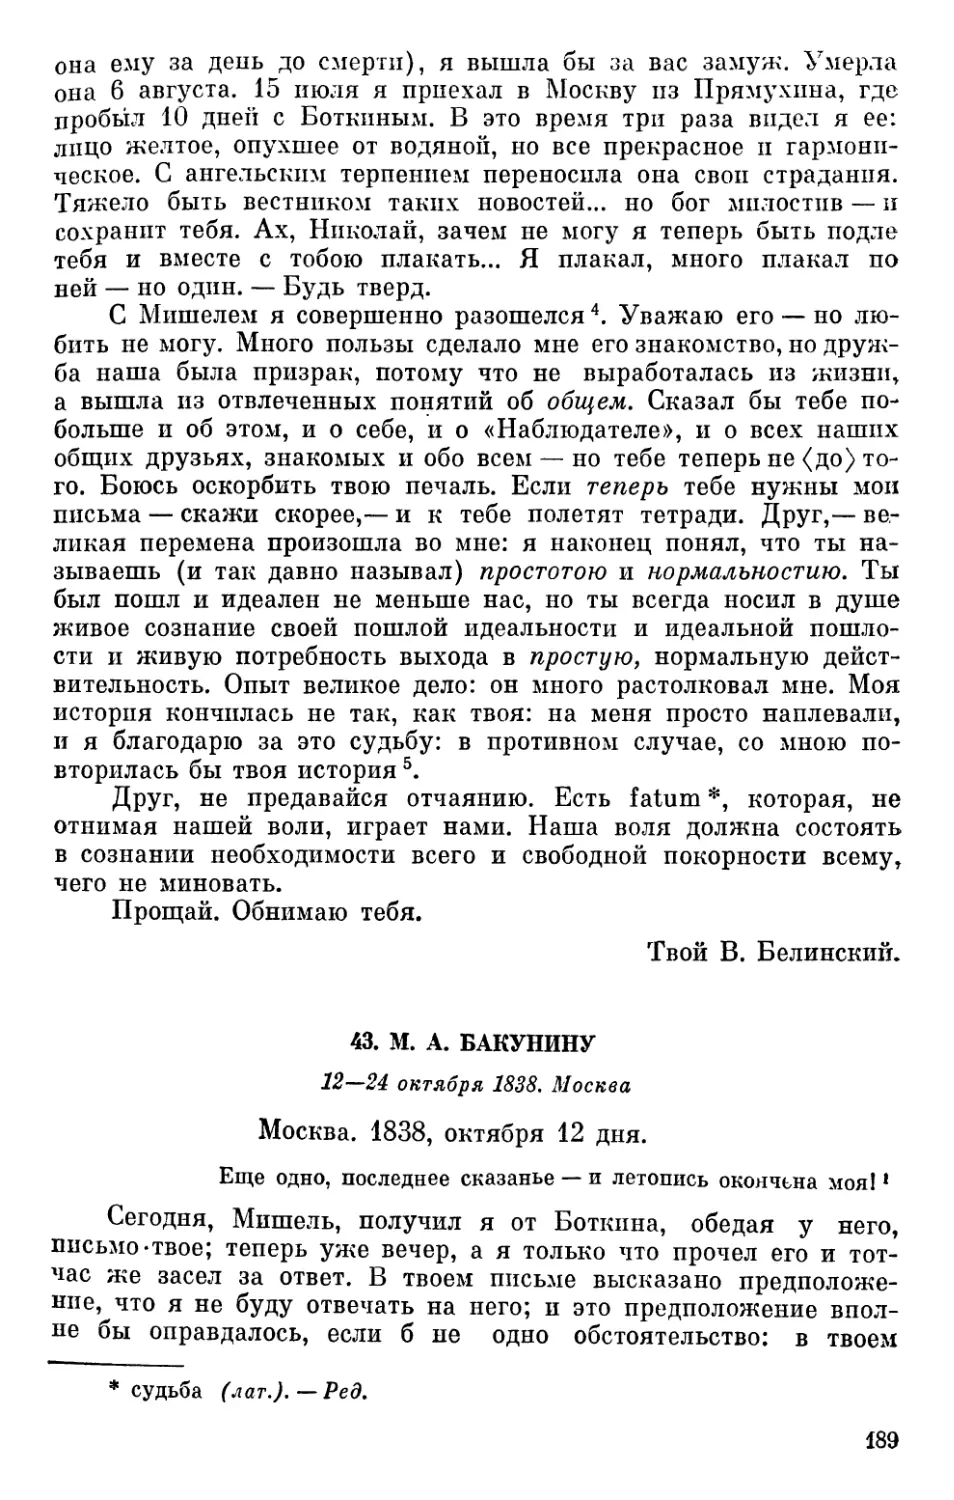 43. М. А. Бакунину. 12—24 октября 1838